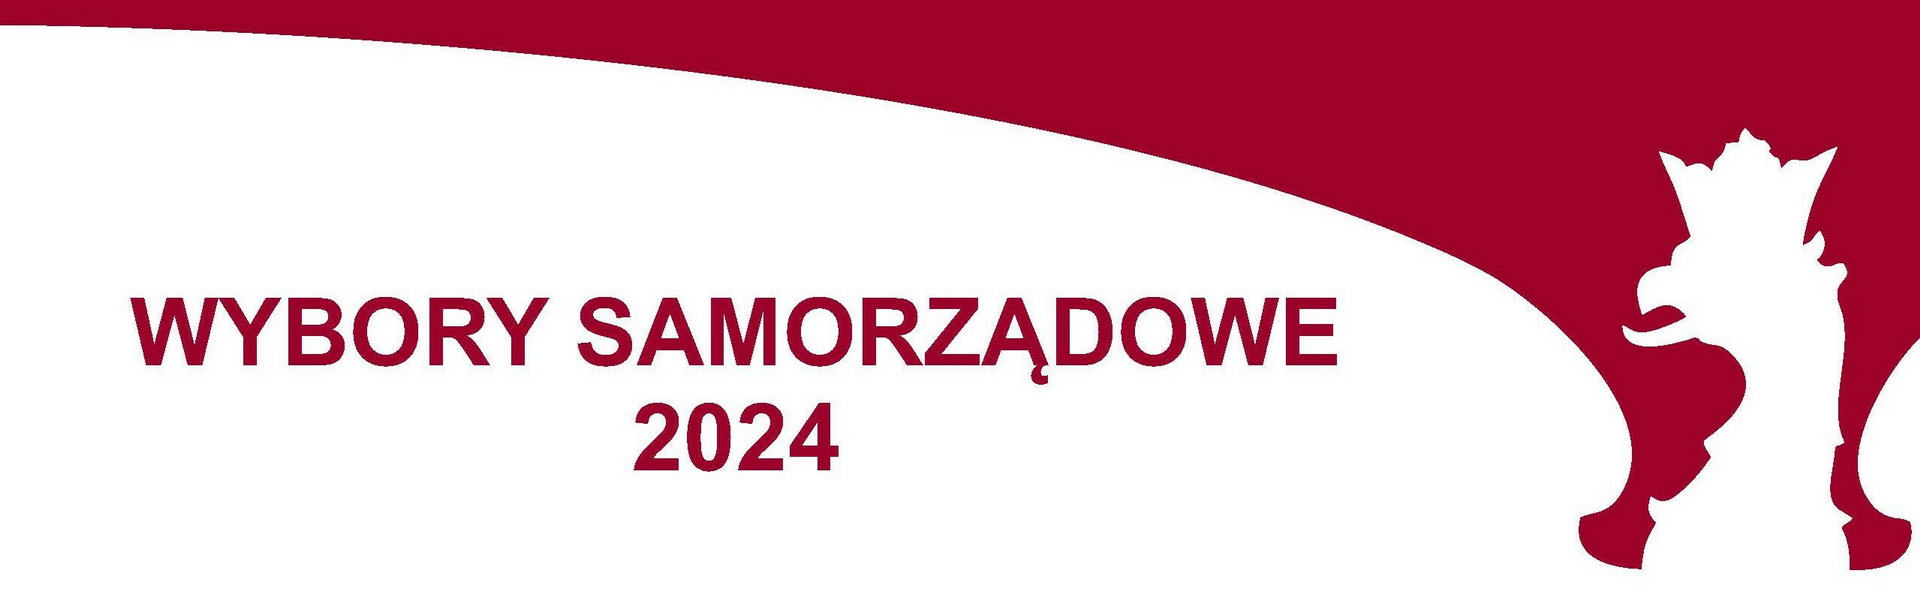 WYBORY SAMORZĄDOWE 2024 - PORADNIK - Radio Kielce